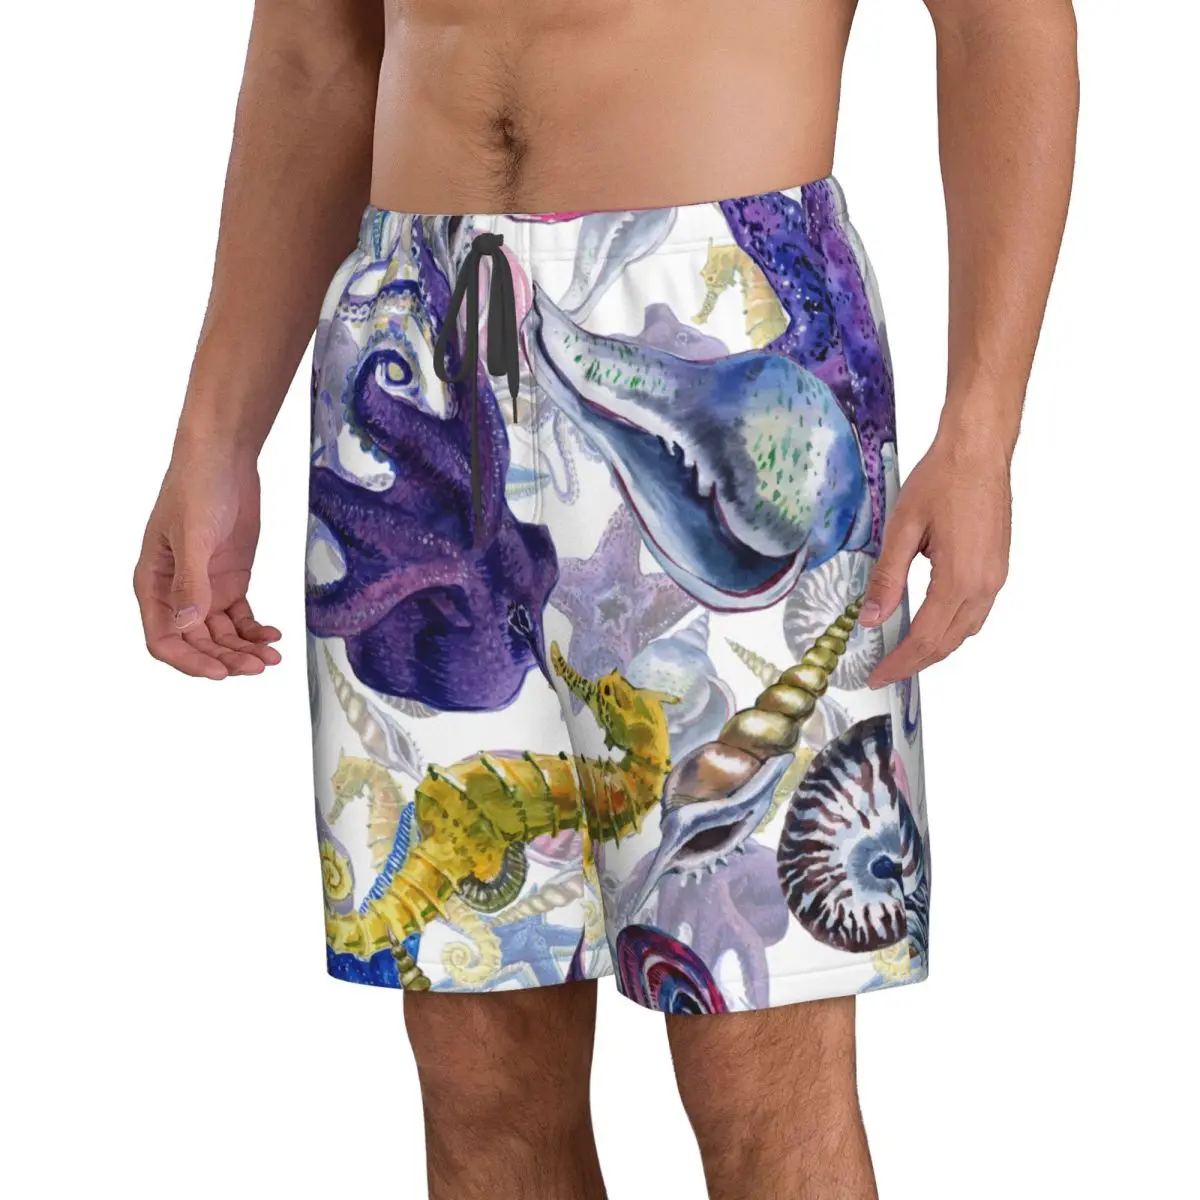 גברים חוף קצר מהיר ייבוש שחייה המטען בצבעי מים חוף צדפים יצורים תת בגדי ים בגדי ים בגד ים קצר - 2